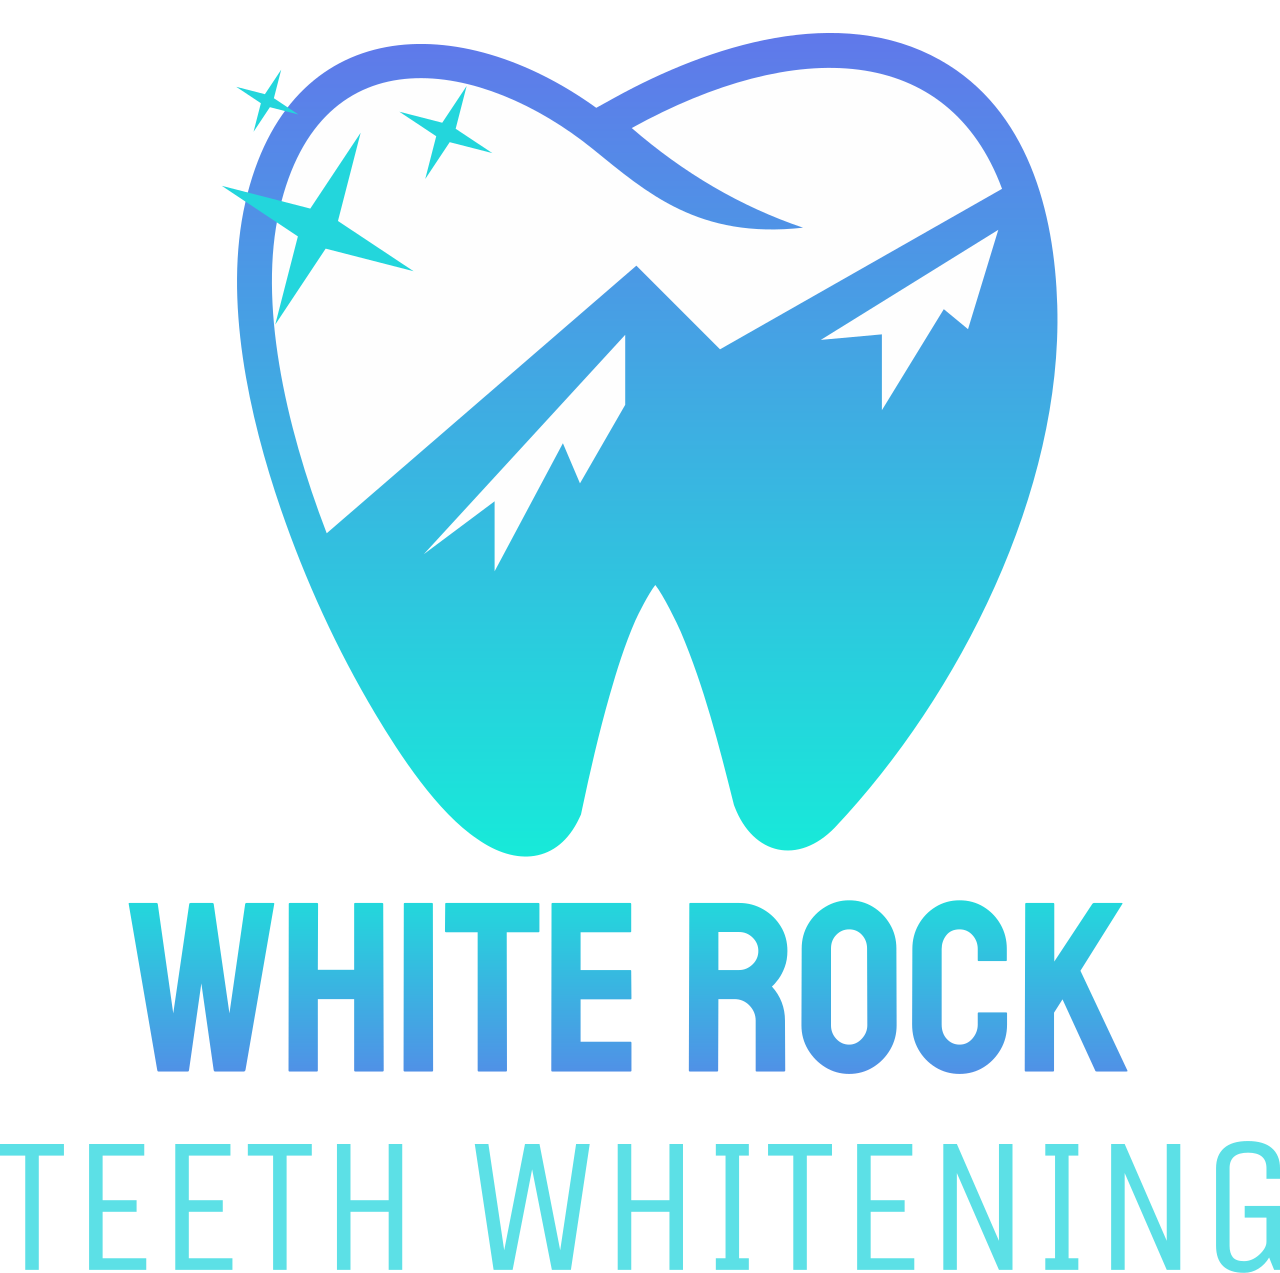 White Rock 's logo